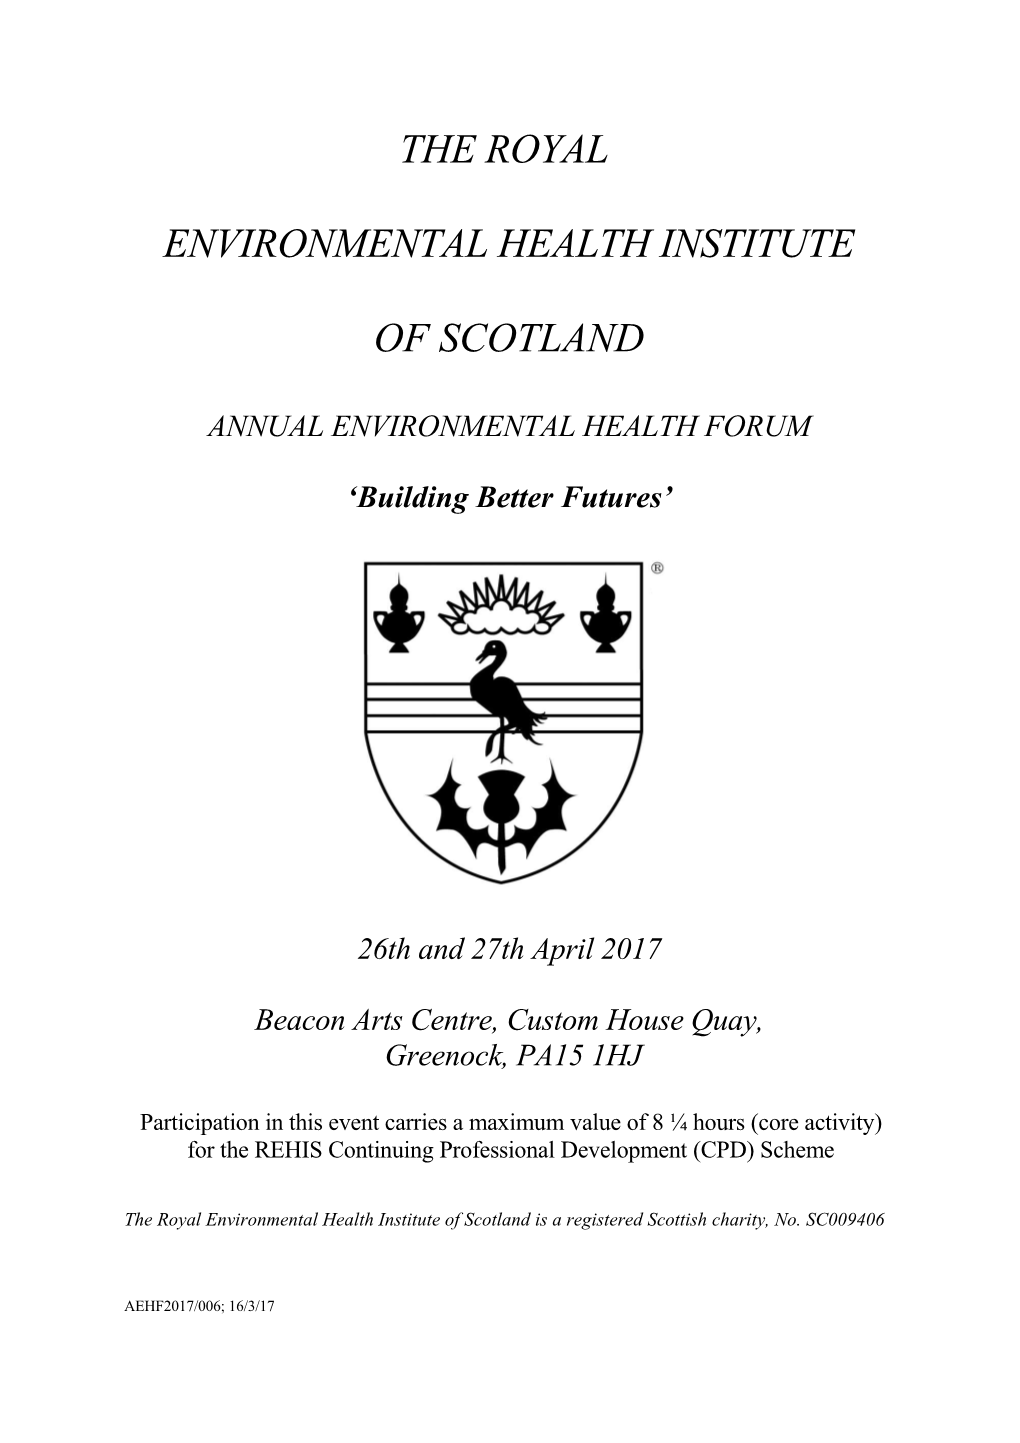 Annual Environmental Health Forum